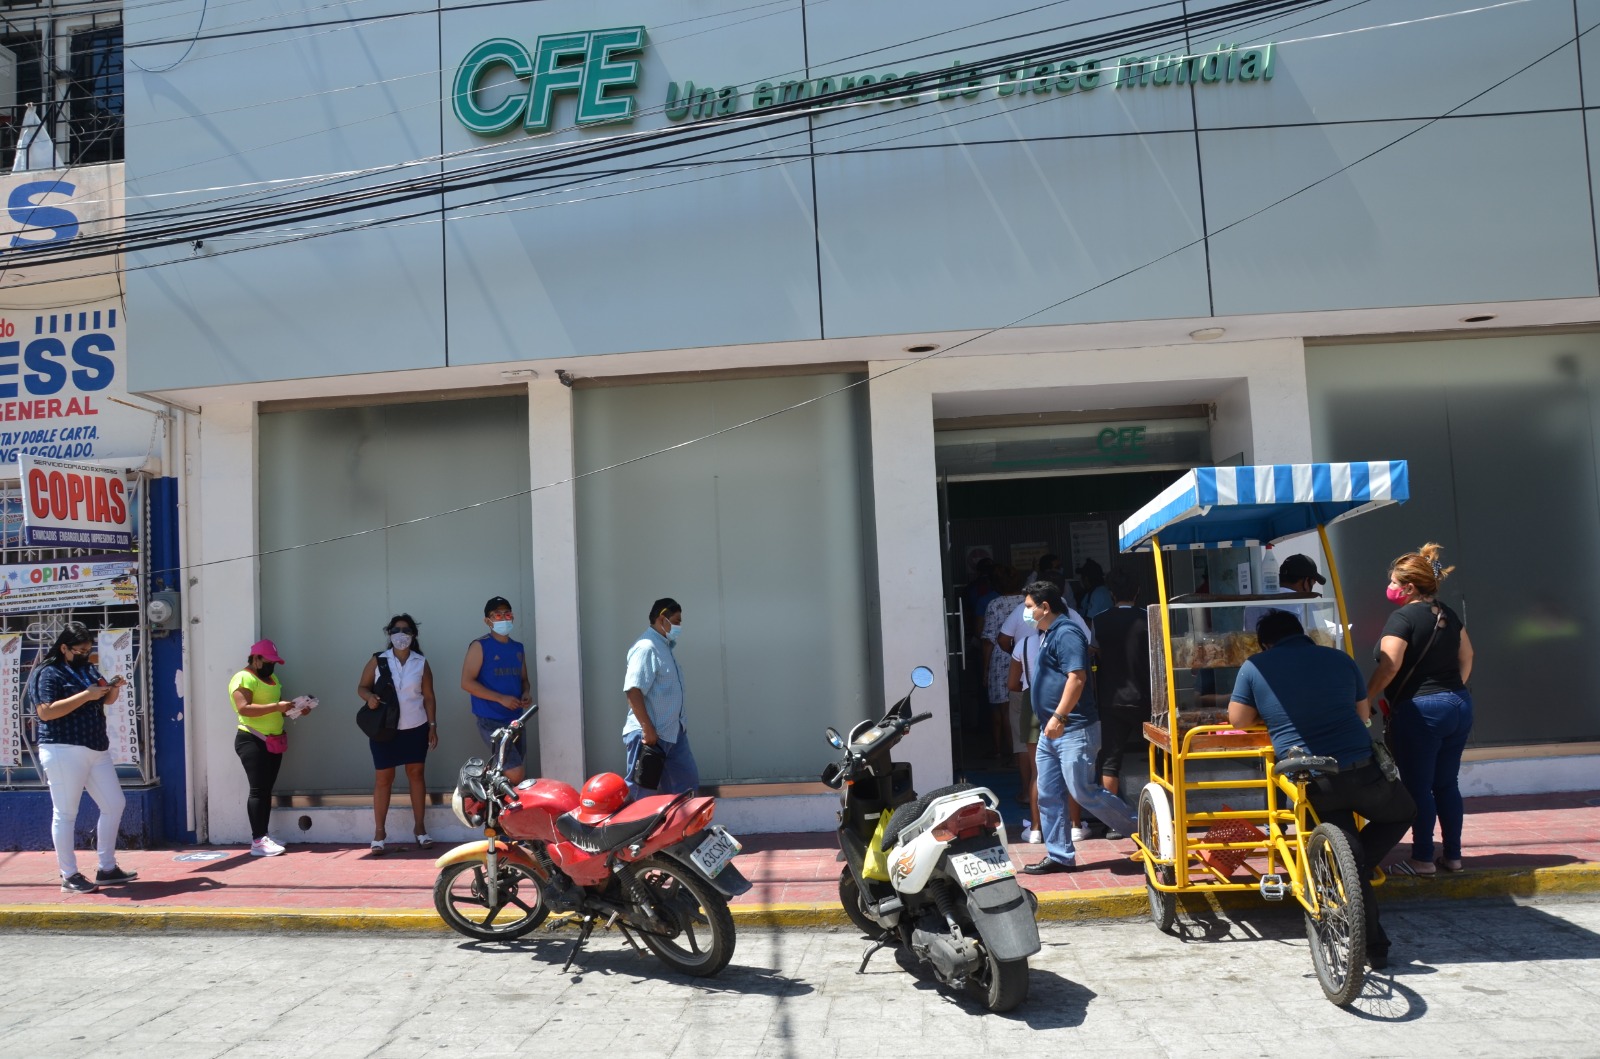 Mujer denuncia abuso contra la CFE en Ciudad del Carmen